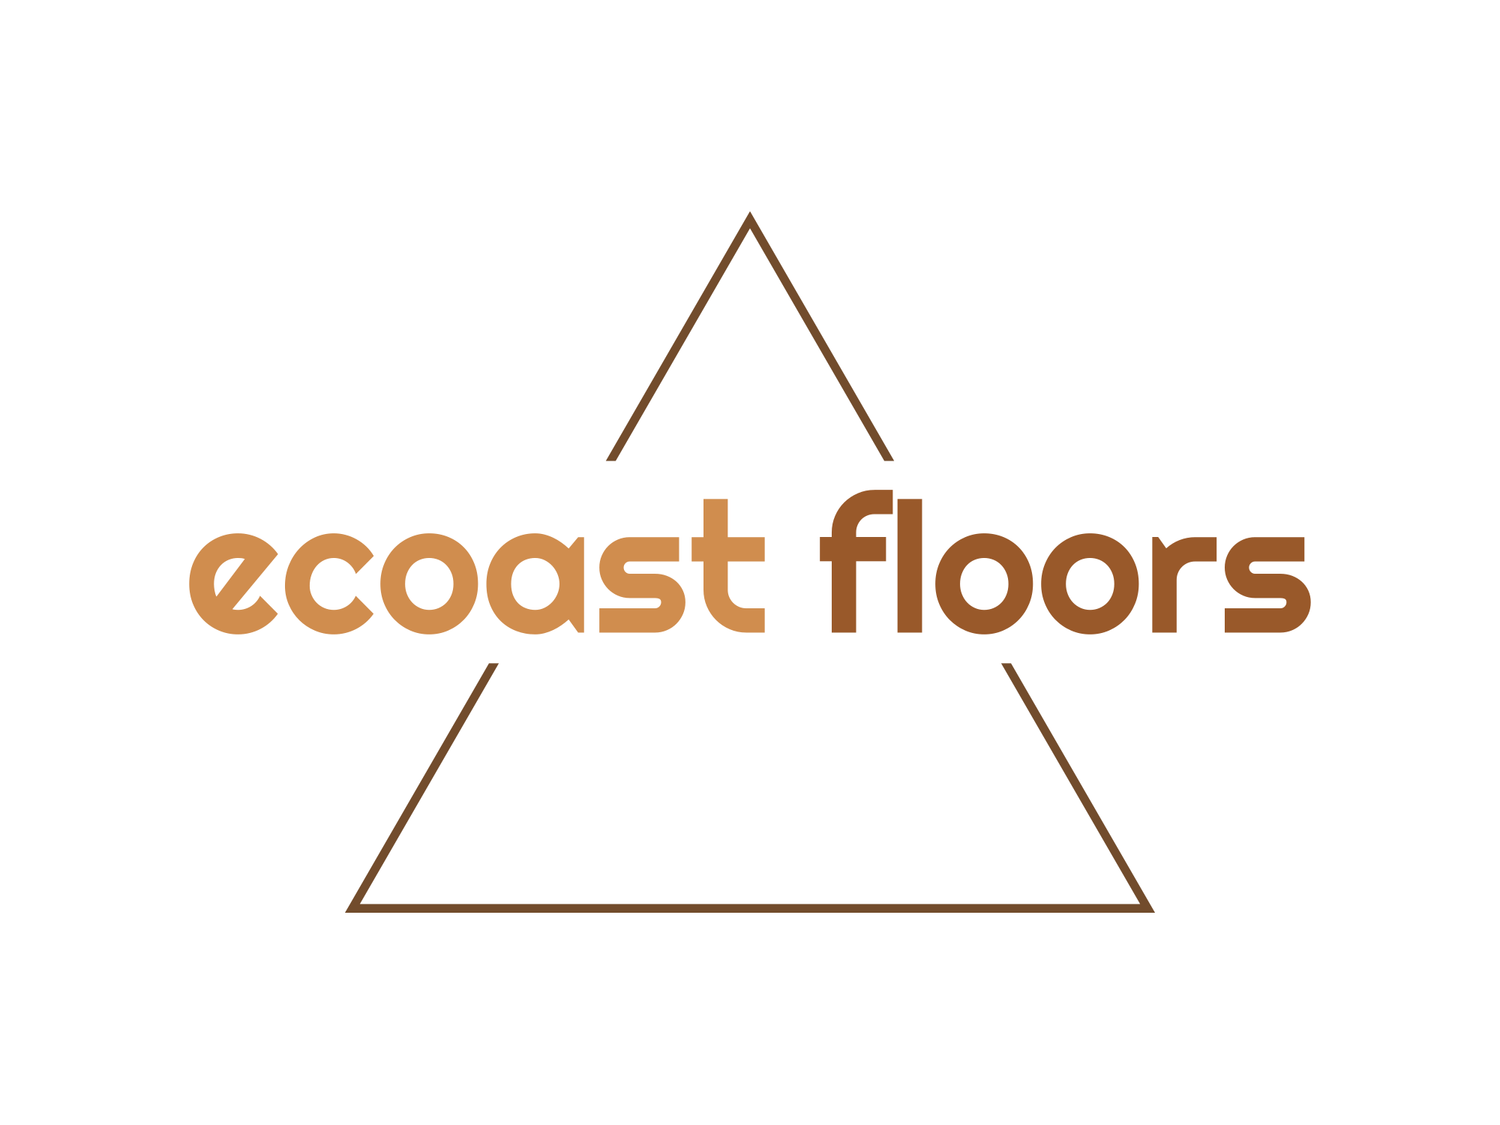 ecoast floors